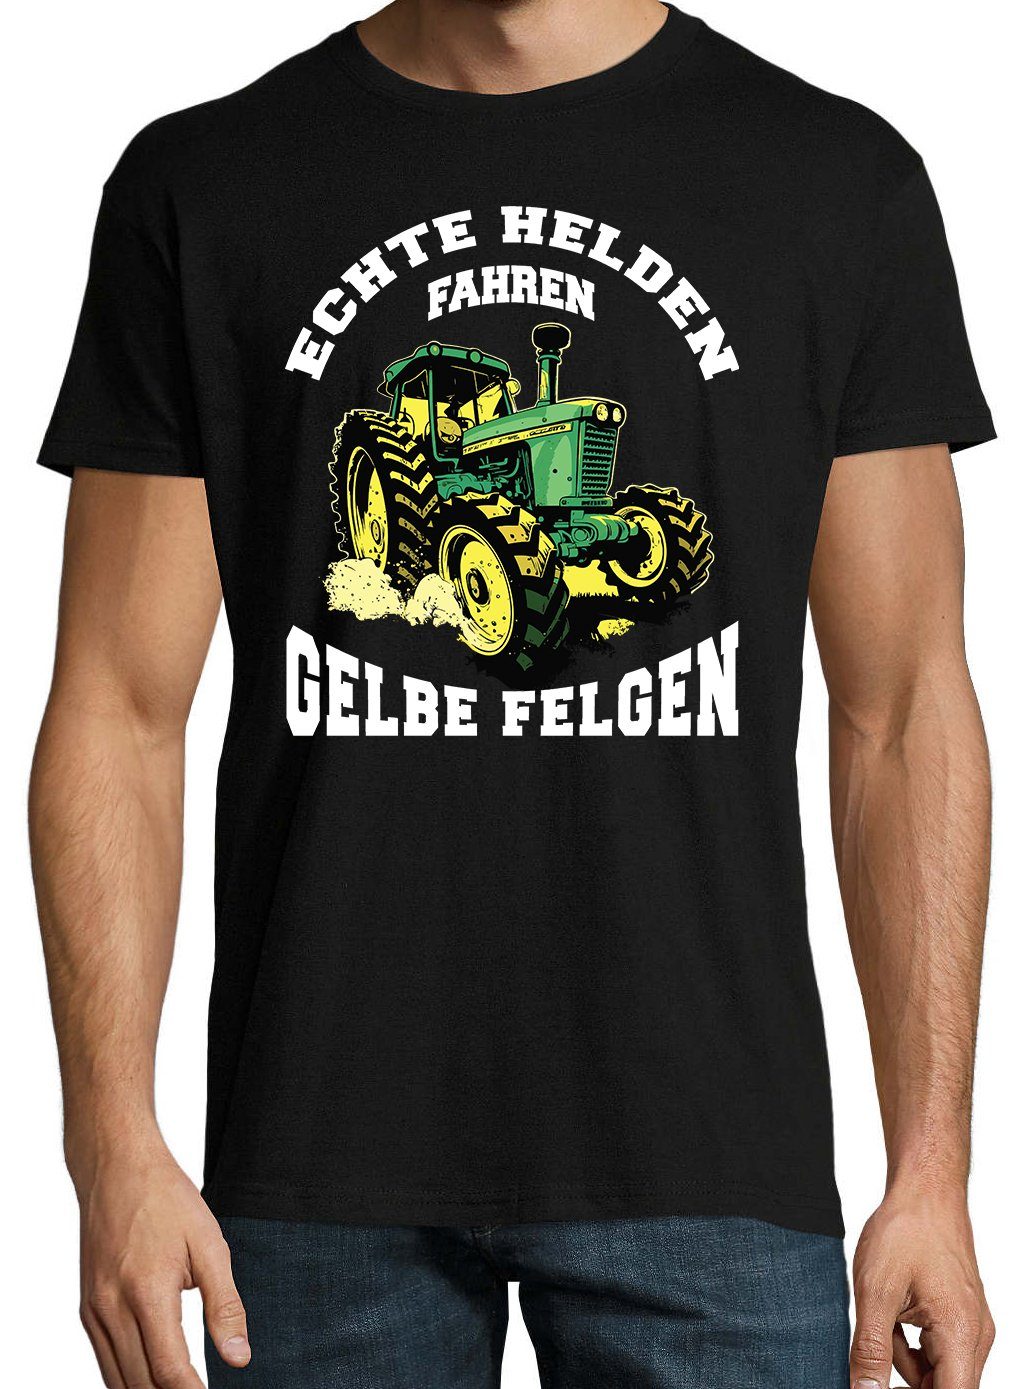 Designz T-Shirt fahren Felgen" Helden lustigem mit Schwarz Spruch Print-Shirt gelbe Youth "Echte Herren